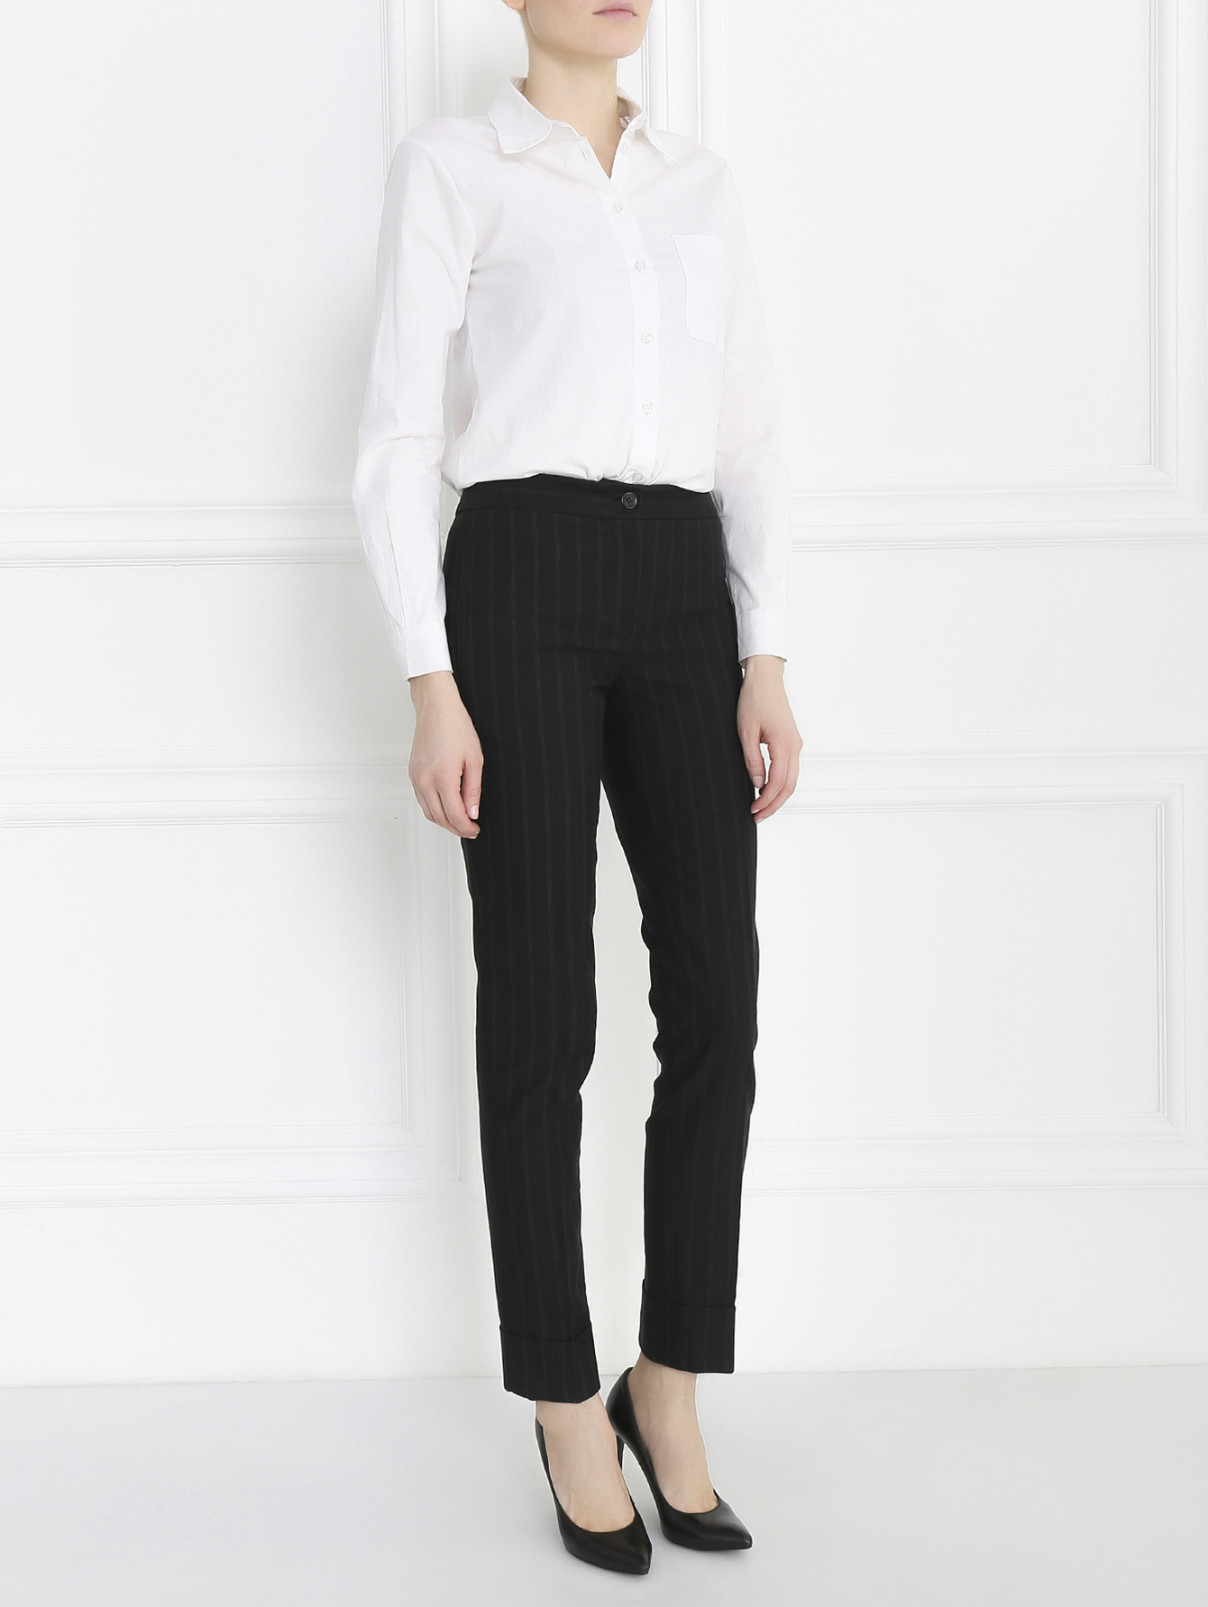 Узкие брюки из хлопка с узором "полоска" Antonio Marras  –  Модель Общий вид  – Цвет:  Серый